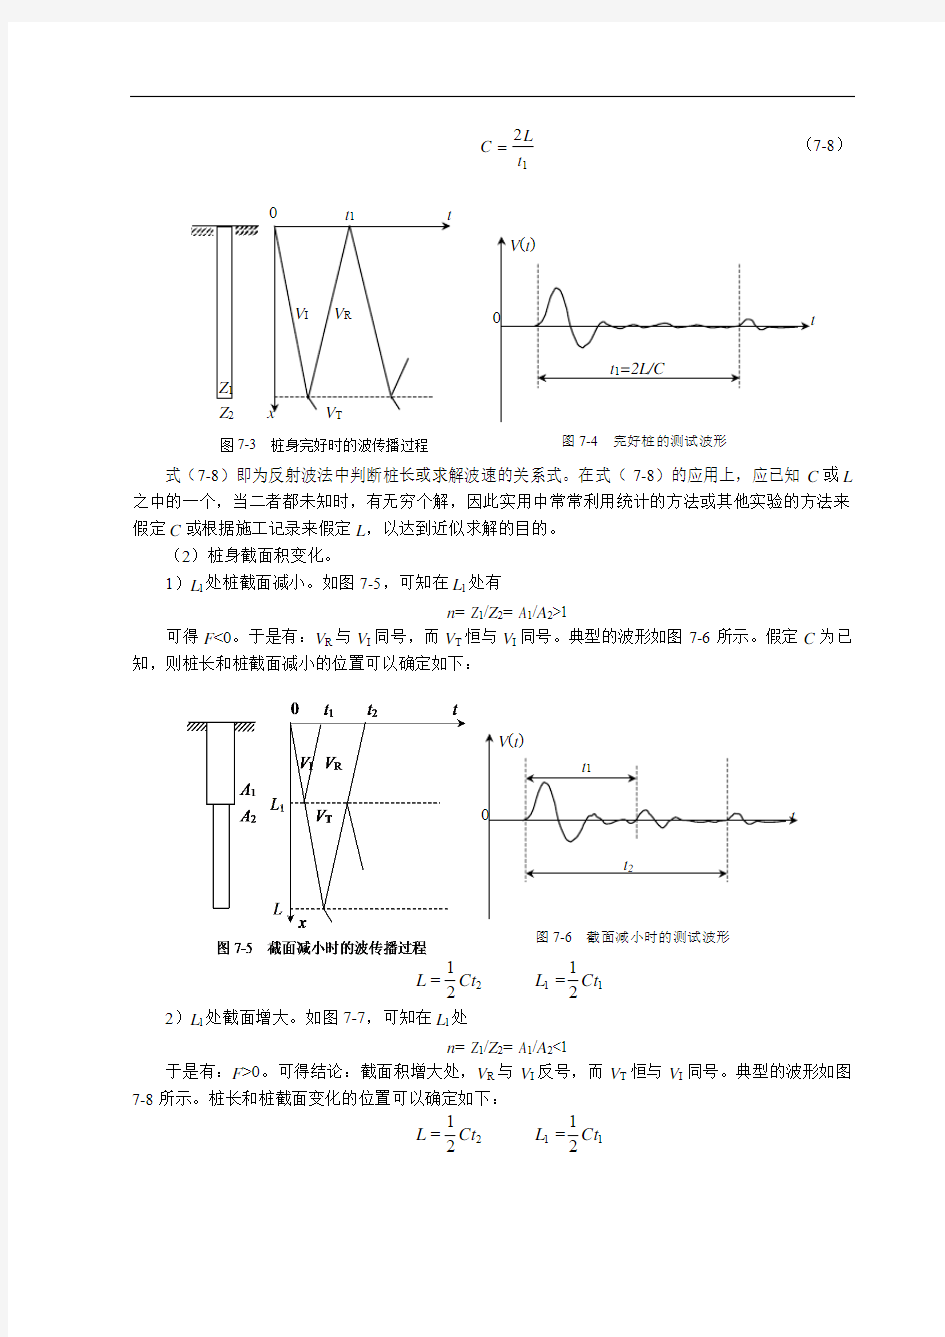 反射波法基本测试原理与波形分析